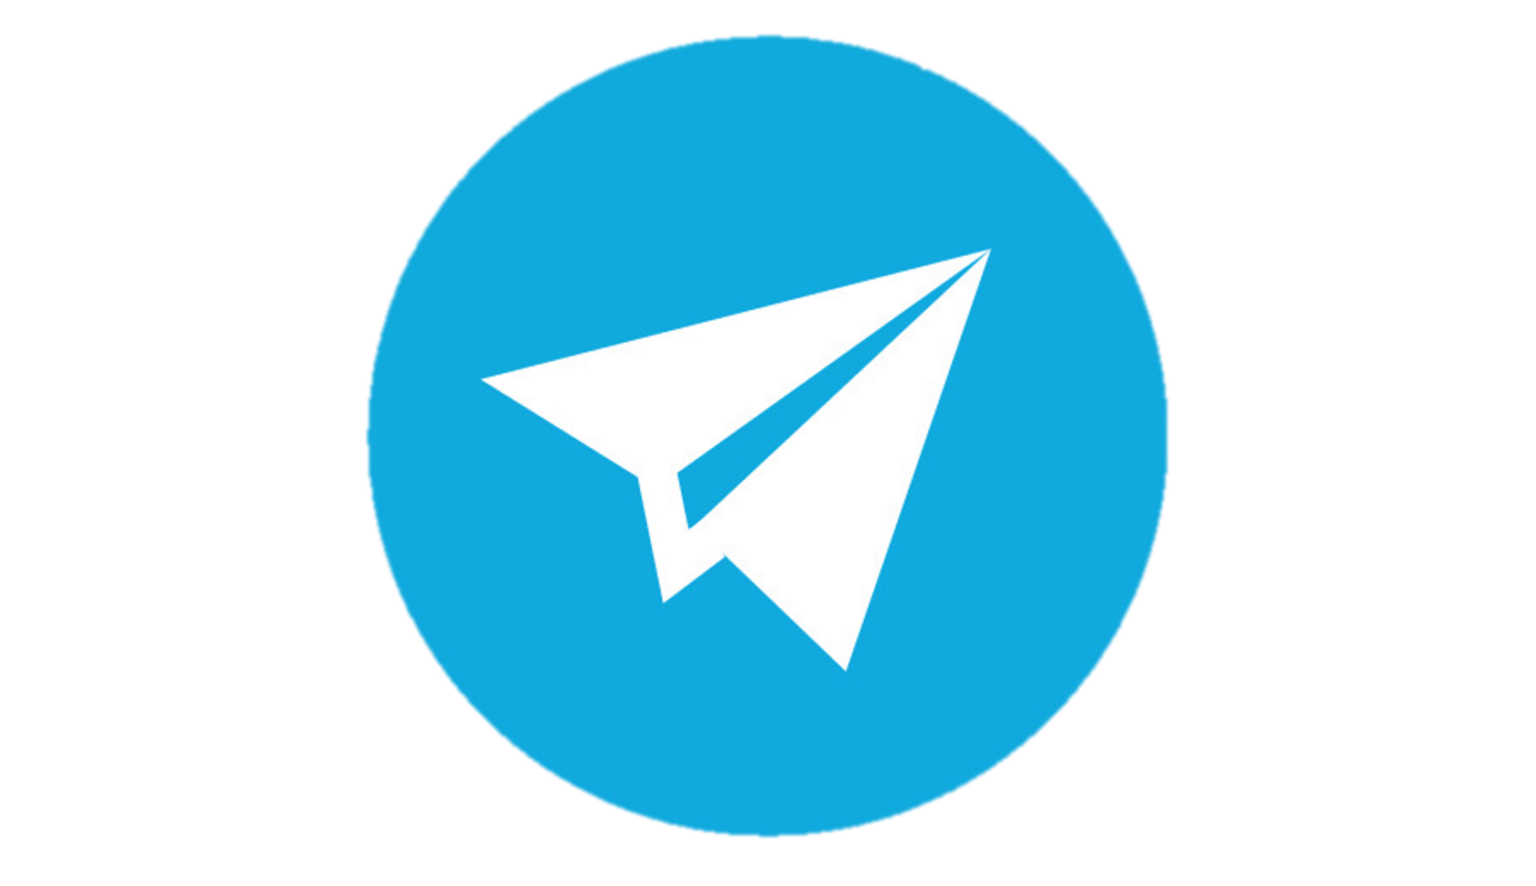 Telegram-1536x886.png